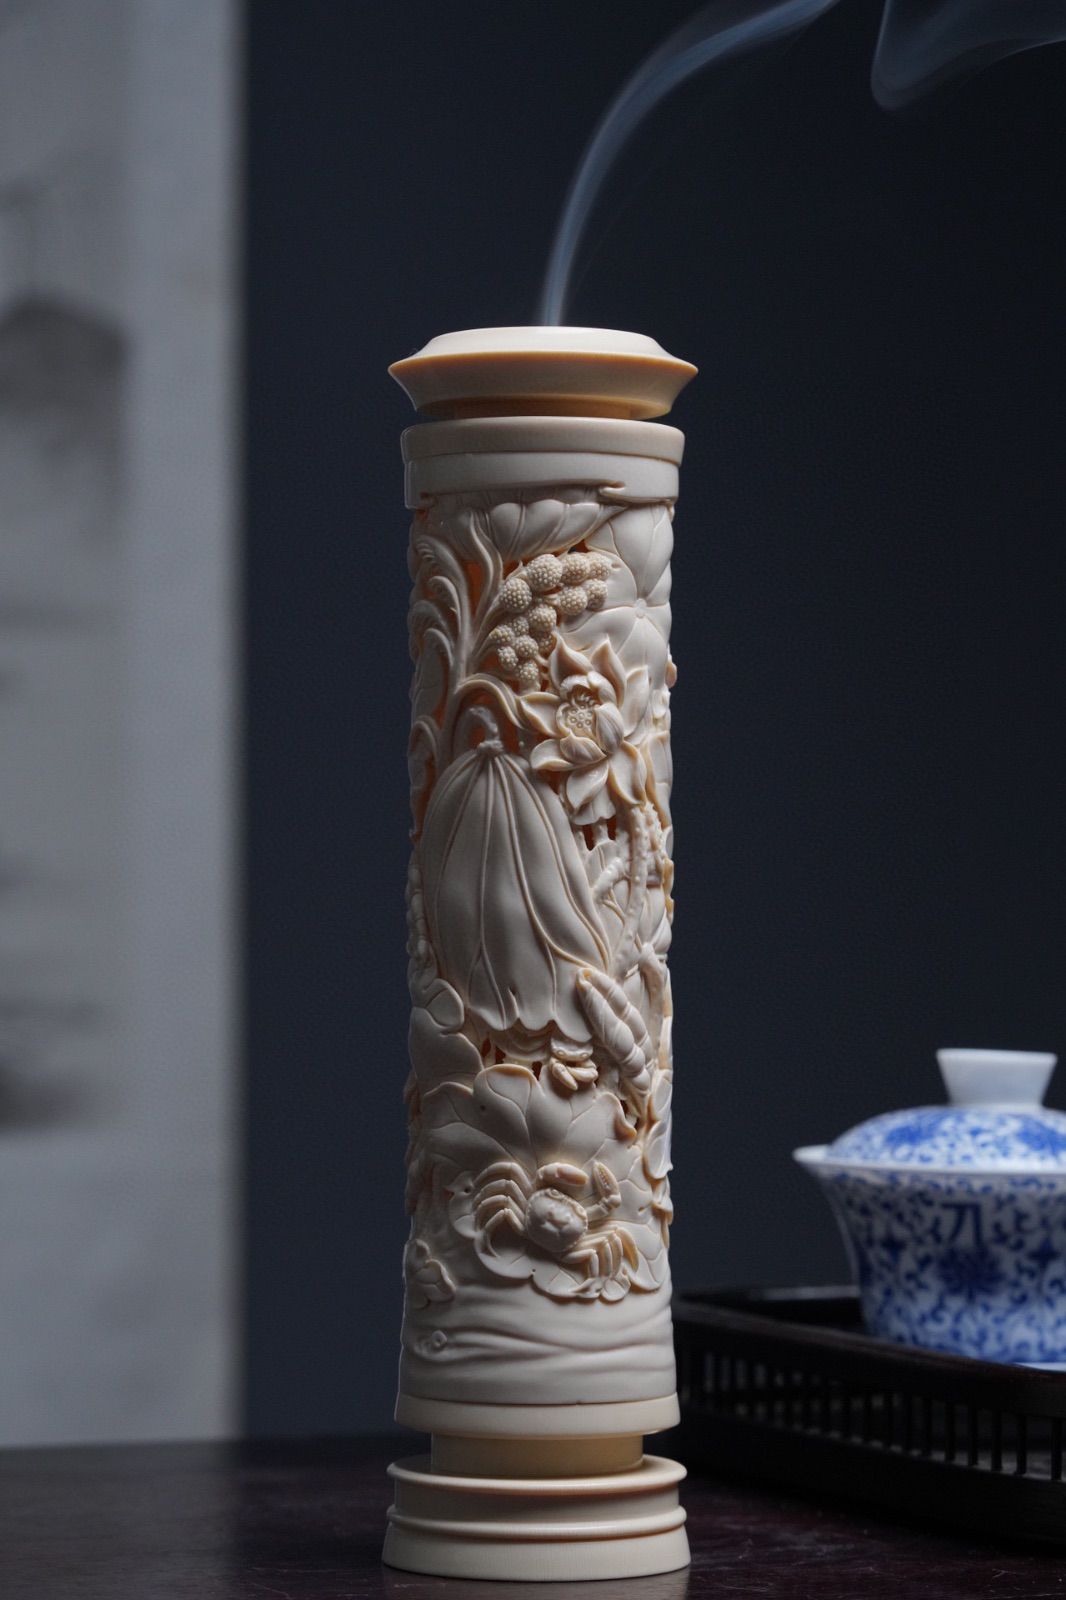 天然マンモス牙美しい手作り彫刻一鷺蓮昇香筒 | www.innoveering.net